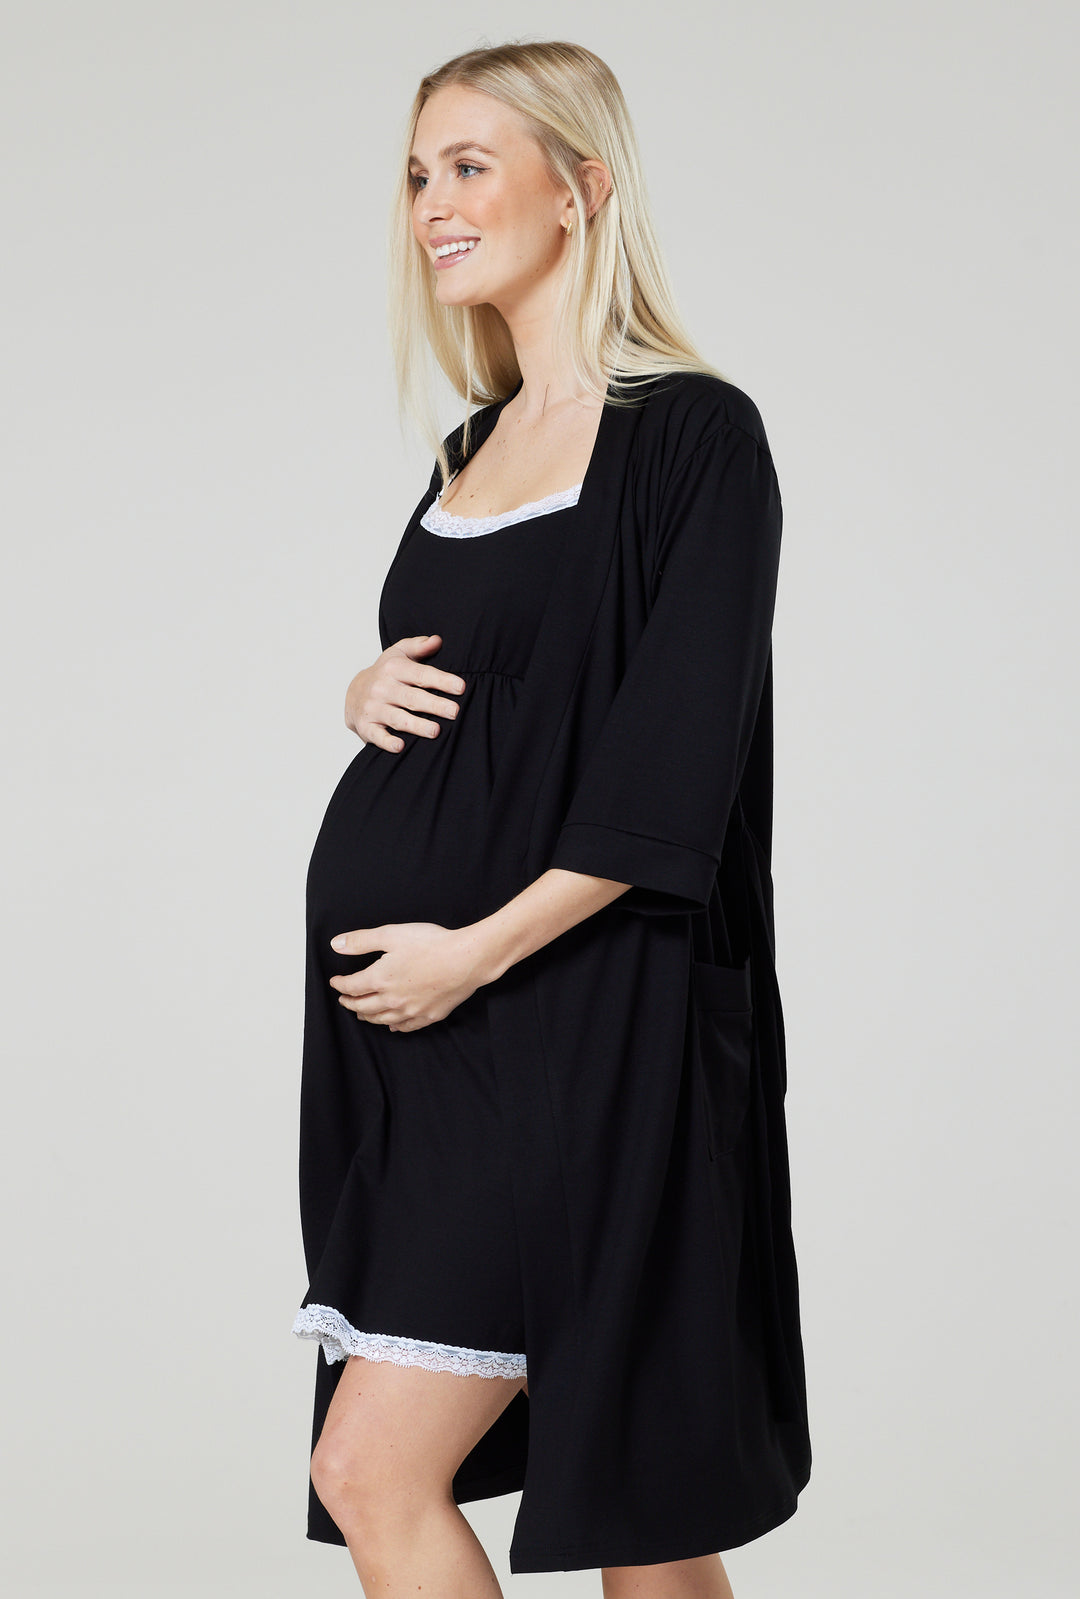 Zestaw Ciążowy - Szlafrok i Koszula z Funkcją Karmienia